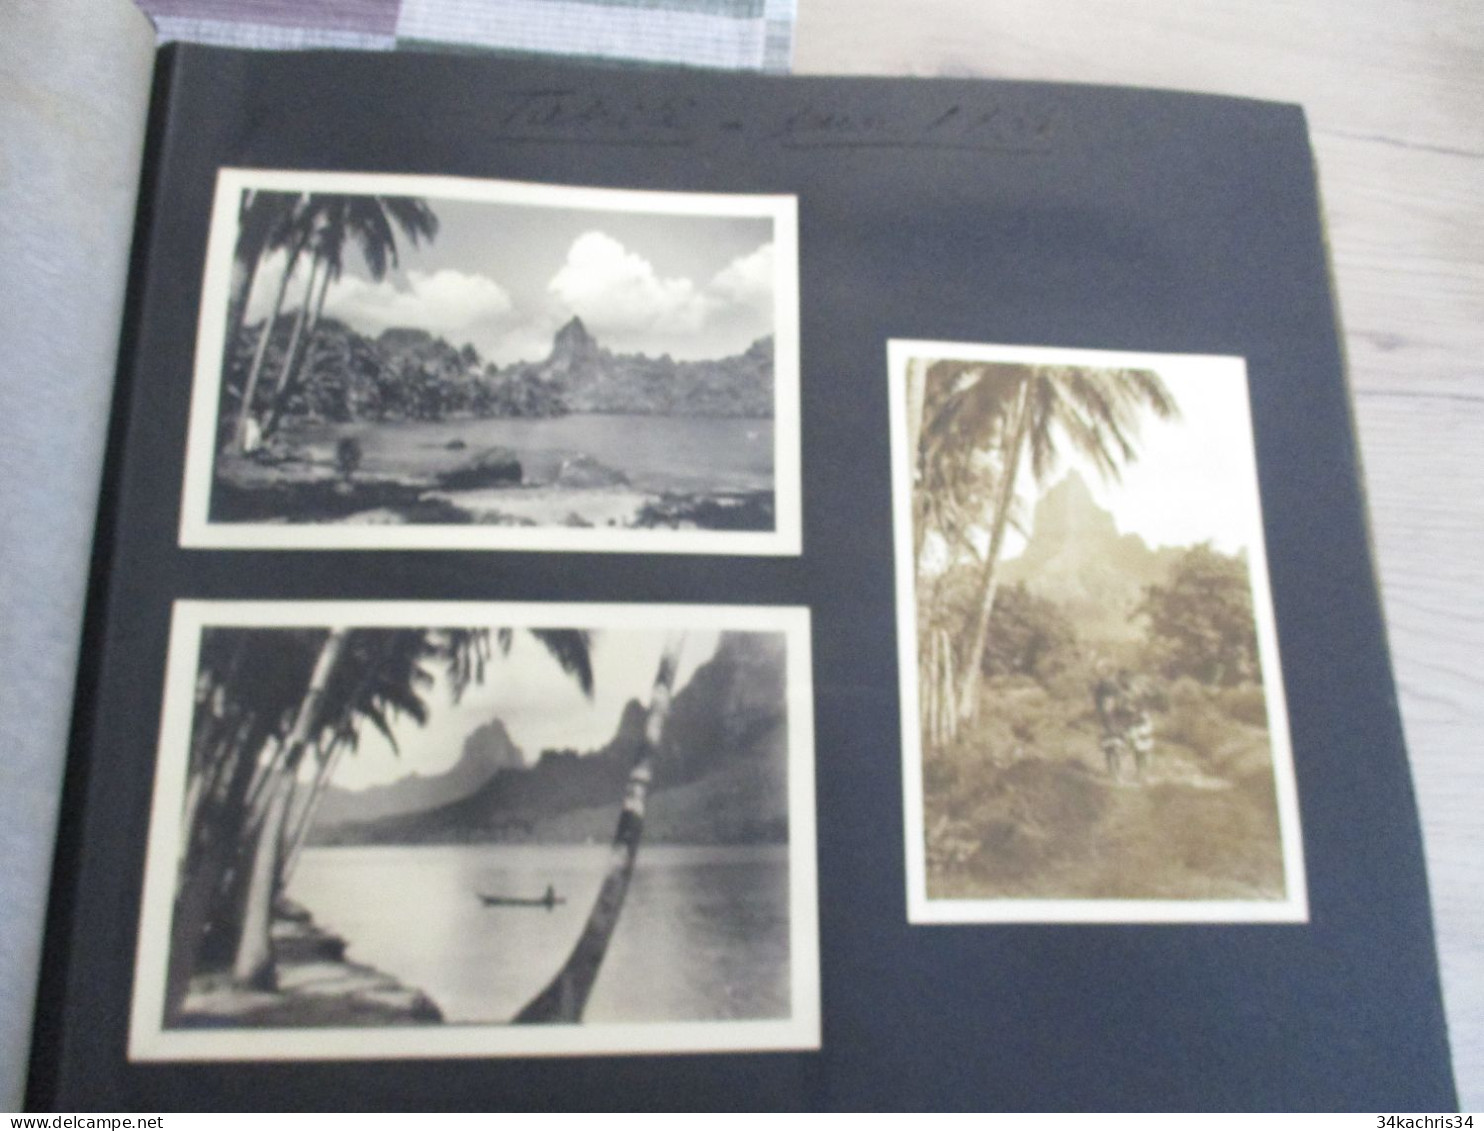 Album voyage  Sarvognan de Brazza  Campagne 1936 87 photos originales Wallis Auckland  Tahiti Tubuac Rapa .....